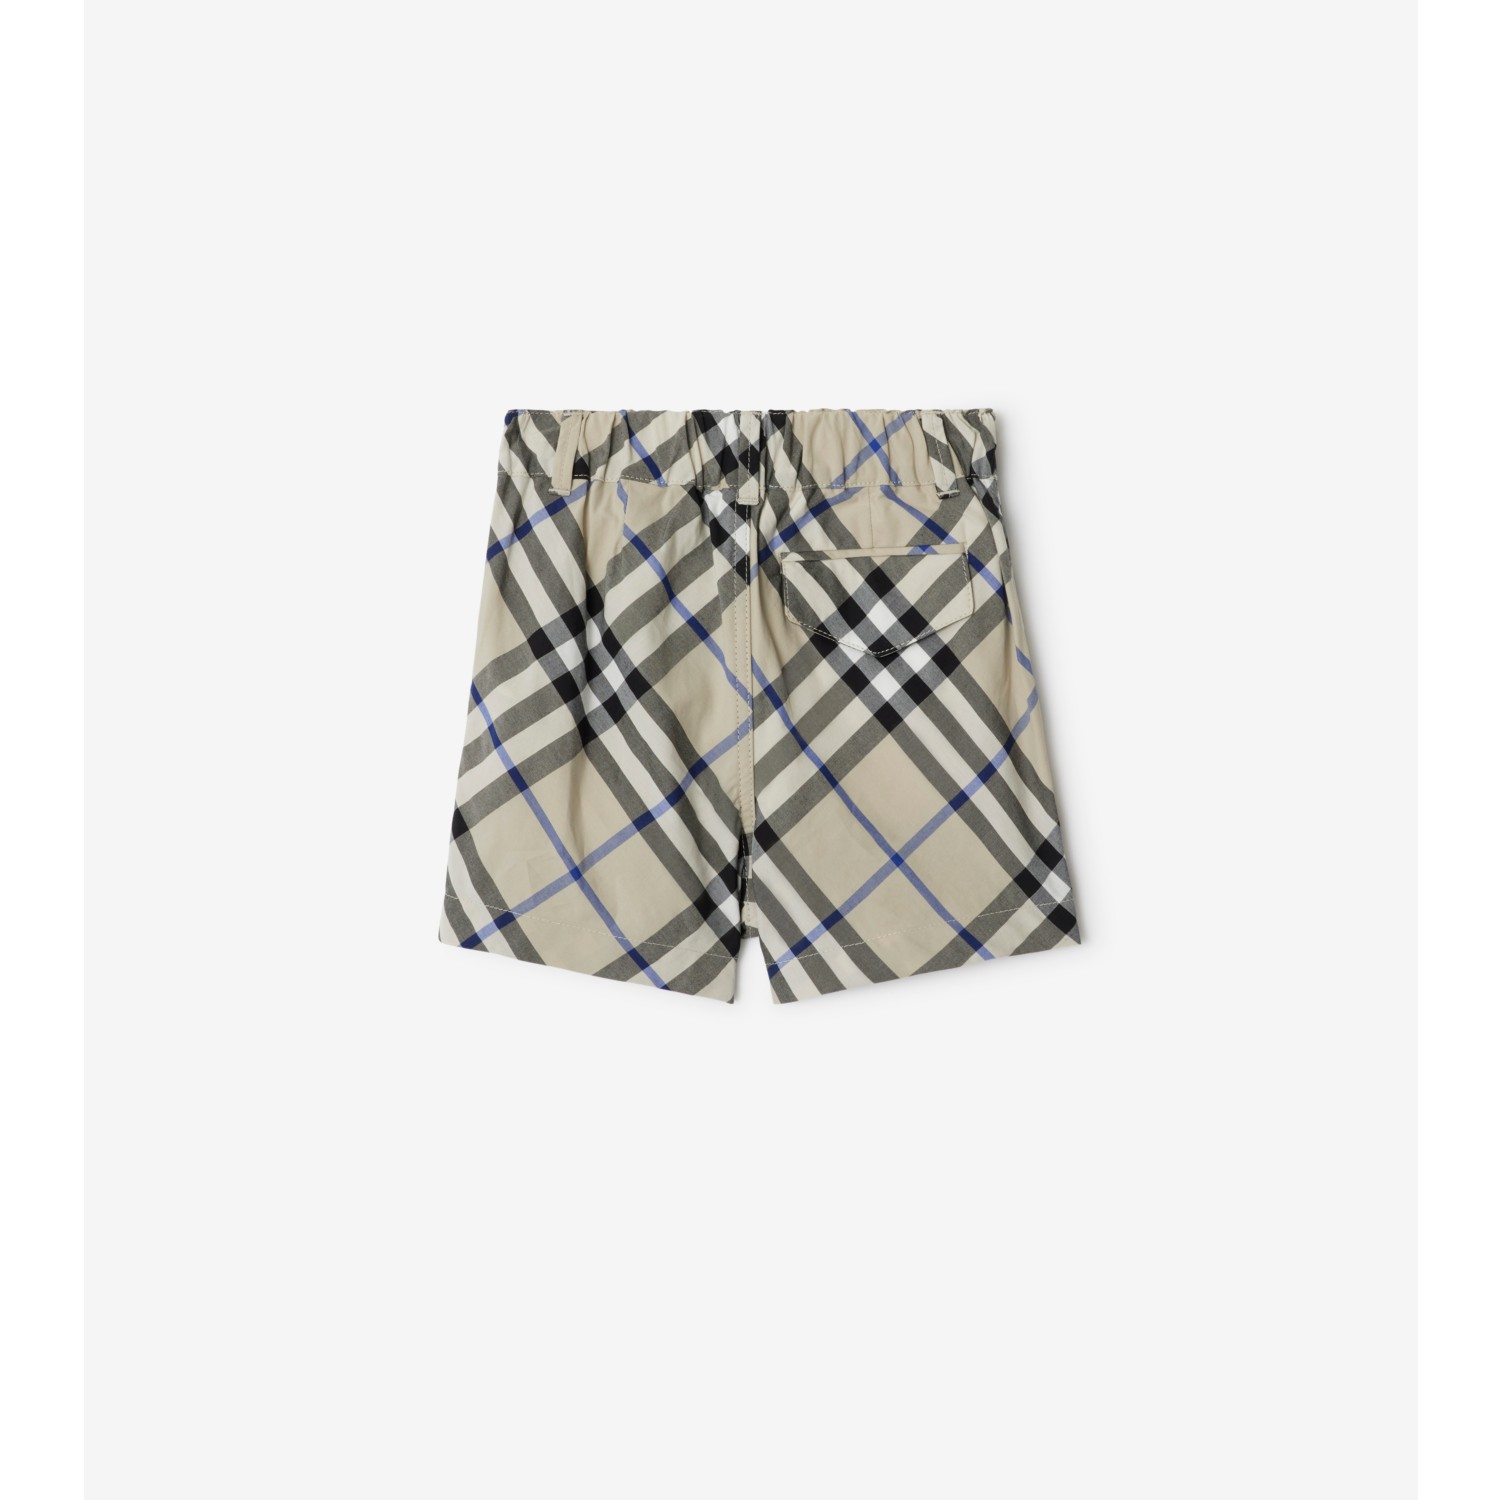 Pantalones cortos en algodón Check